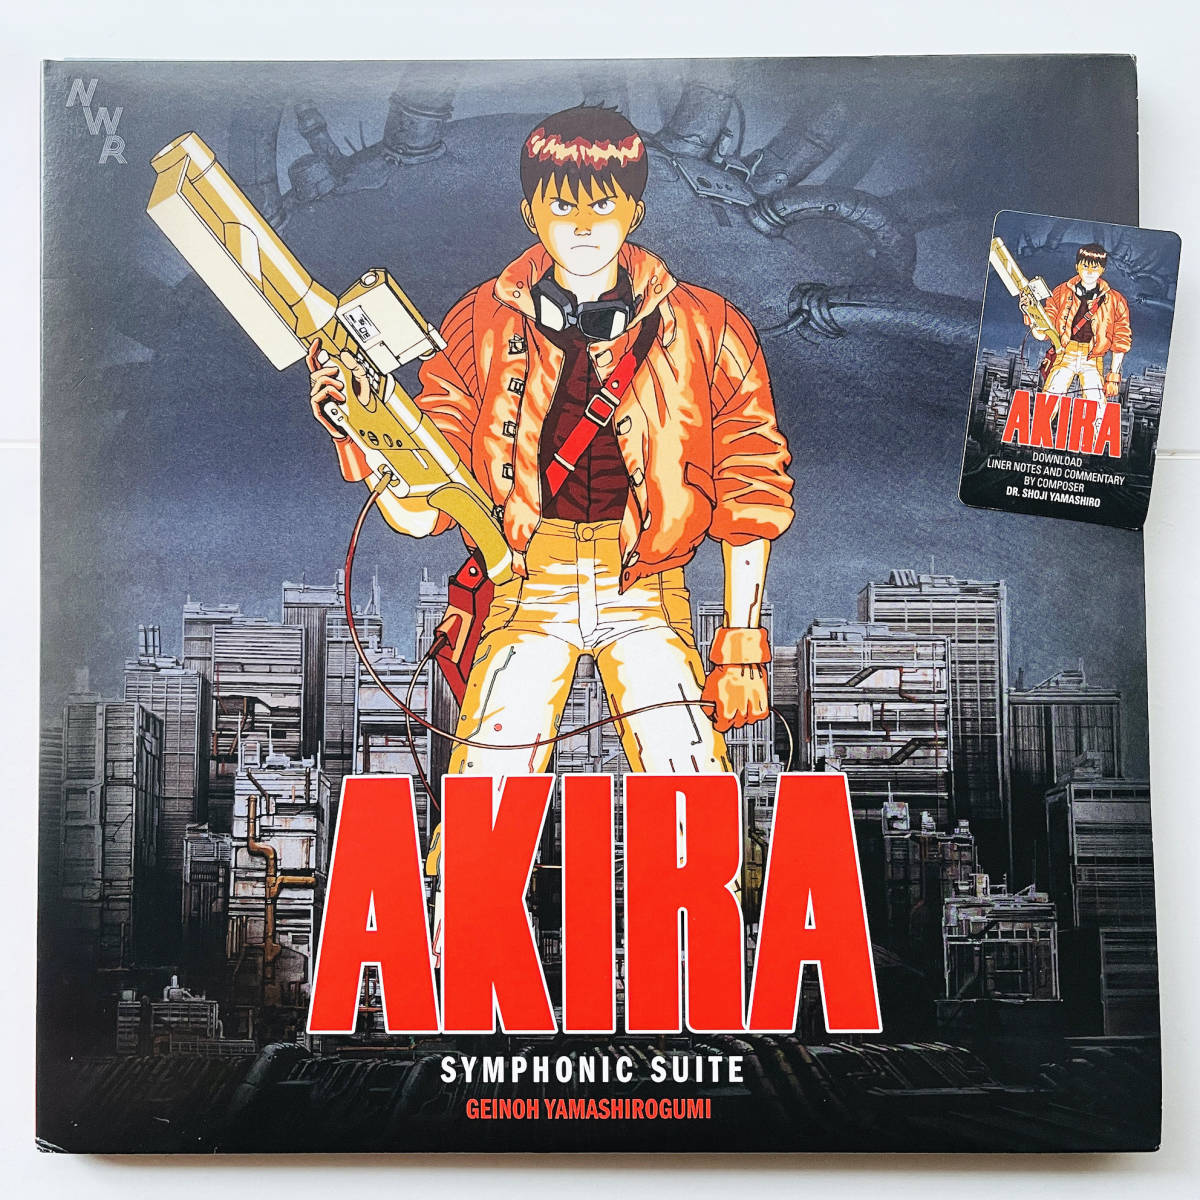  редкостный стандартный запись запись 2LP масса запись ( Akira Symphonic Suite AKIRA - артистический талант гора замок комплект ) большой ...